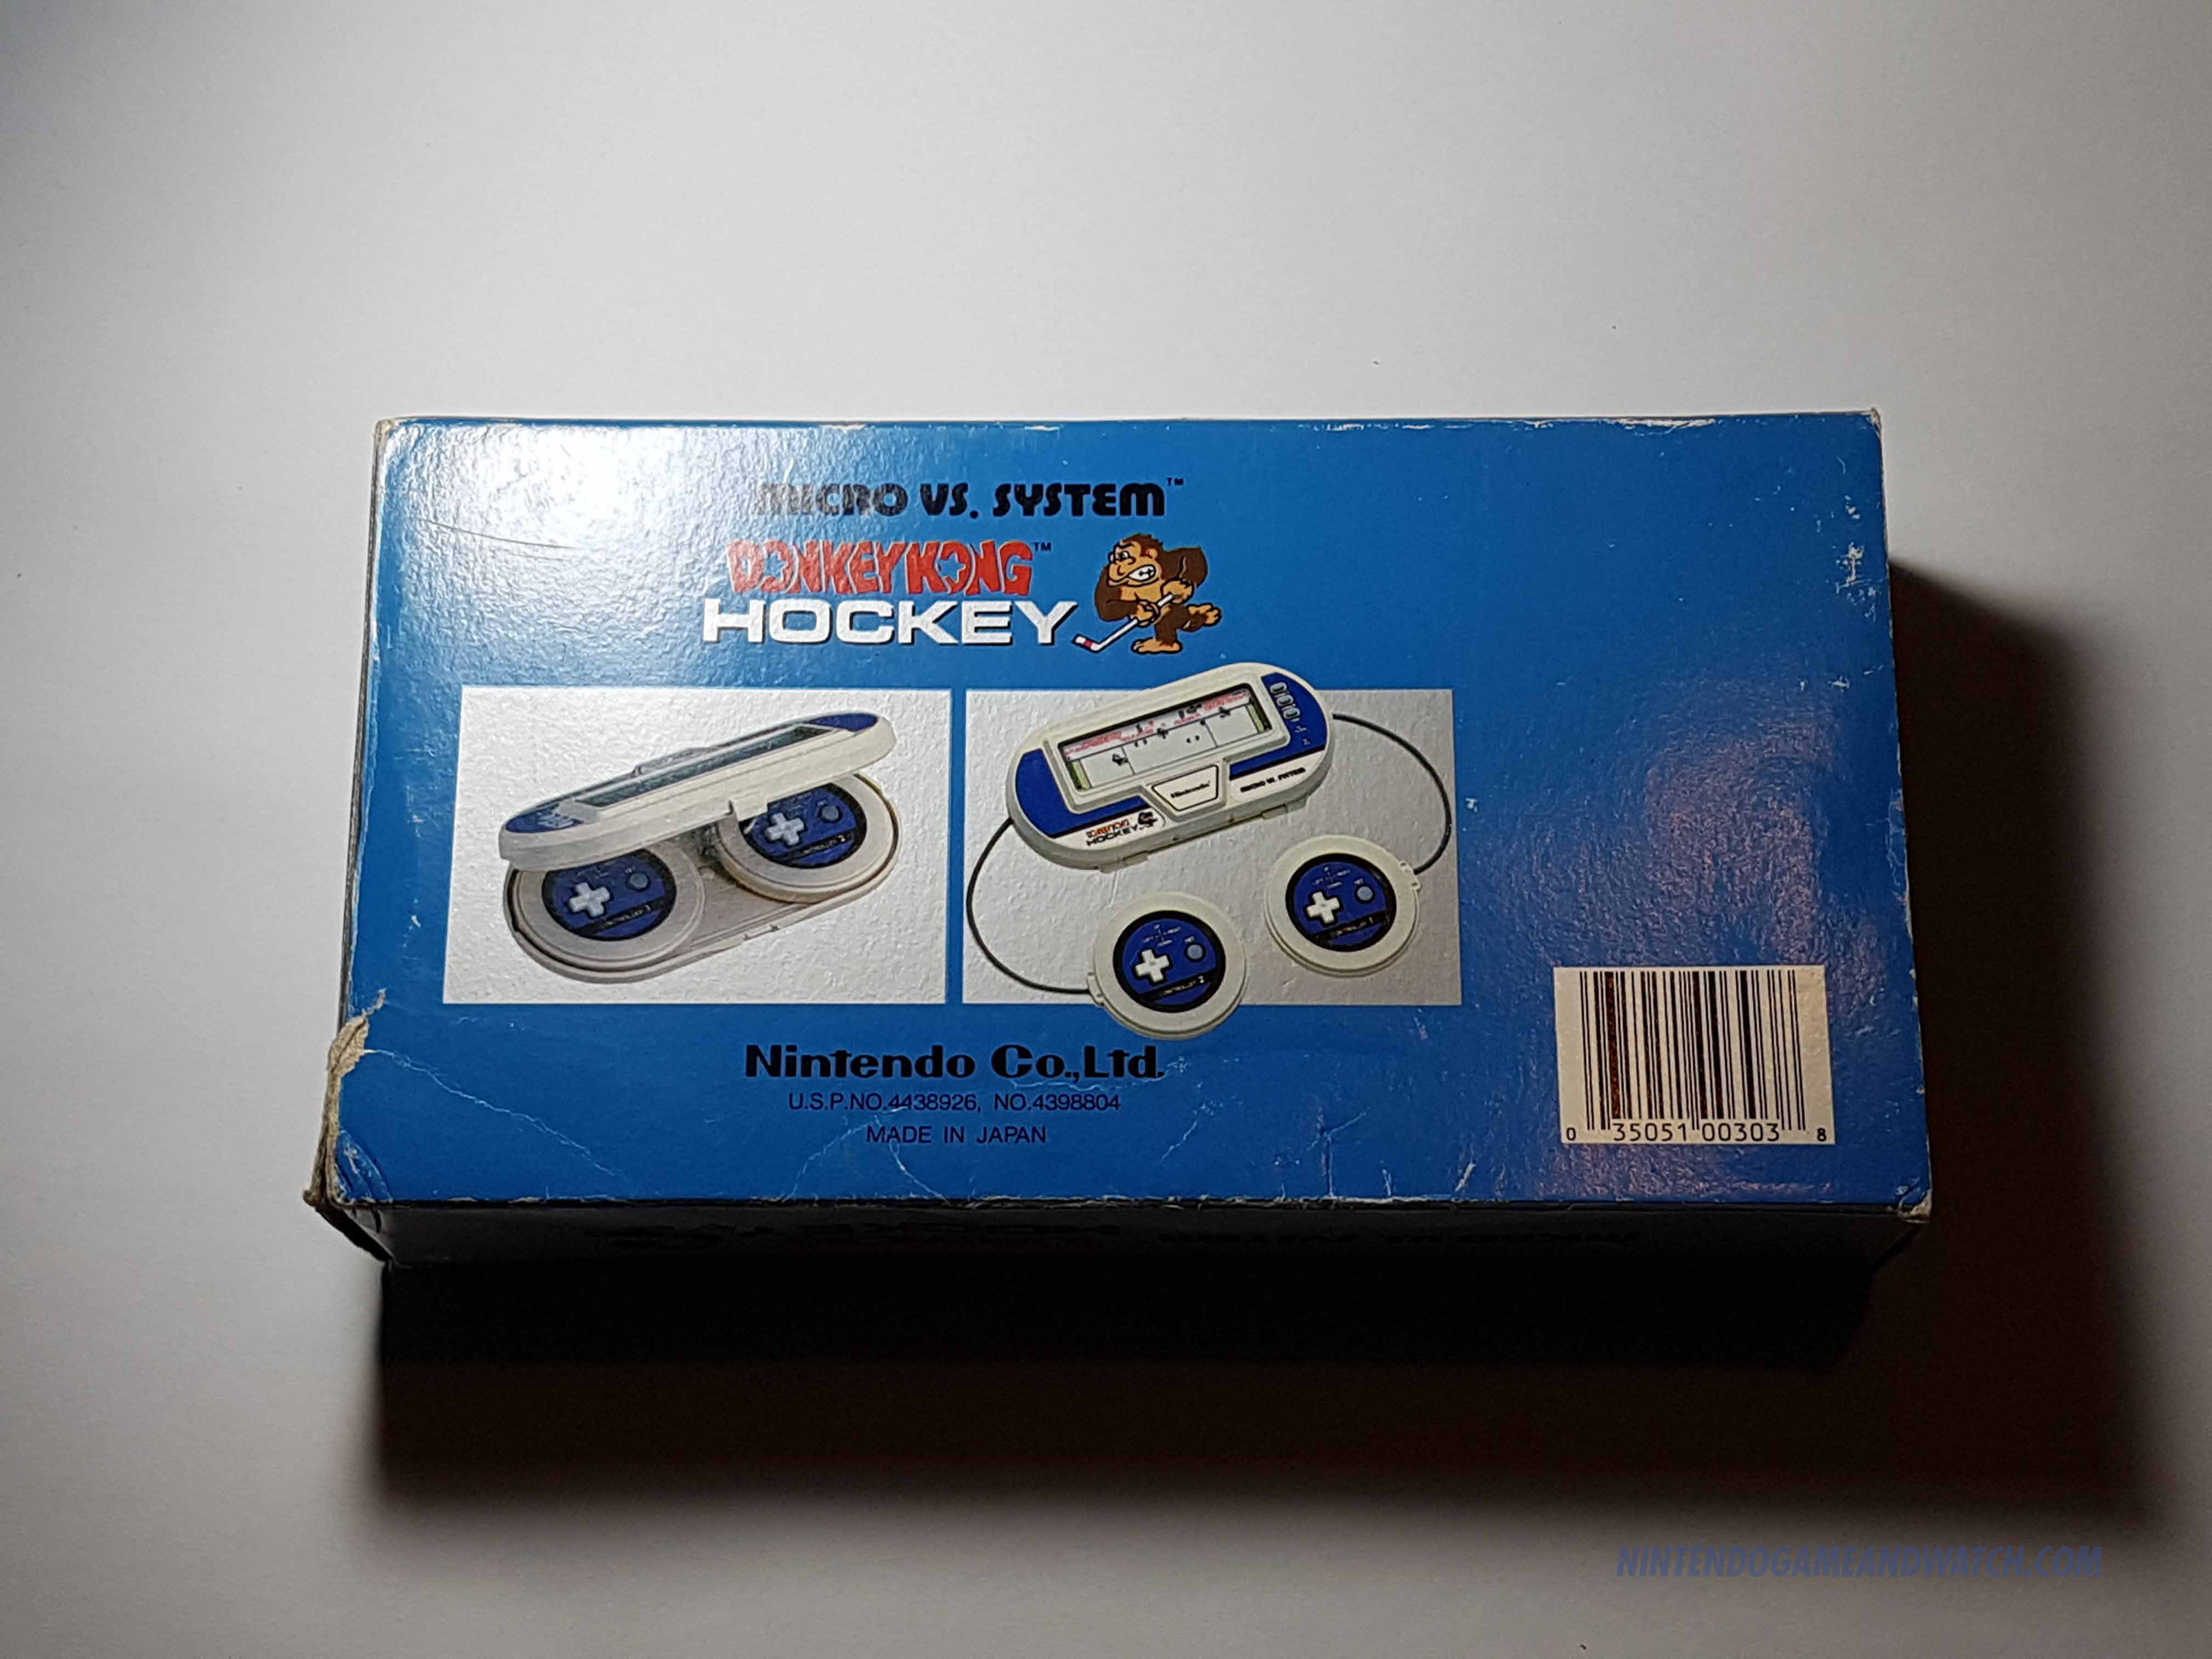 MicroVsSystemDonkeyKongHockey5